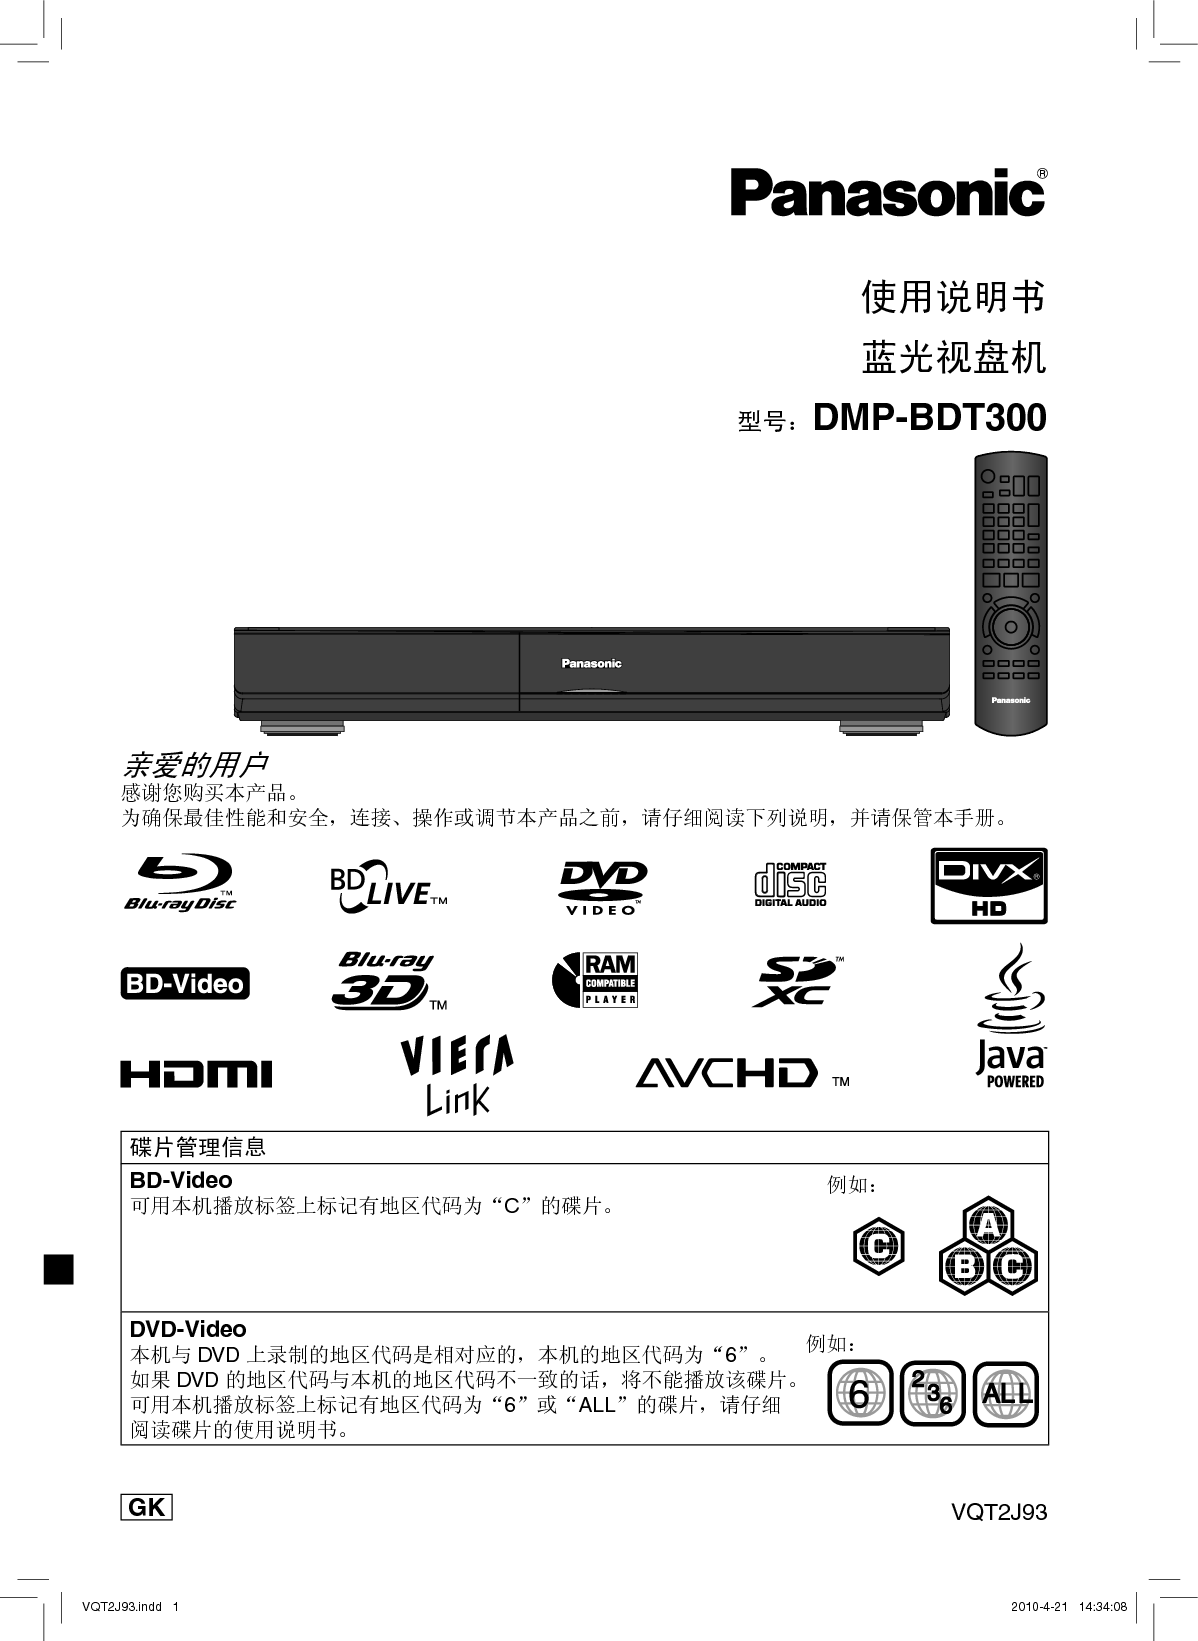 松下 Panasonic DMP-BDT300 说明书 封面